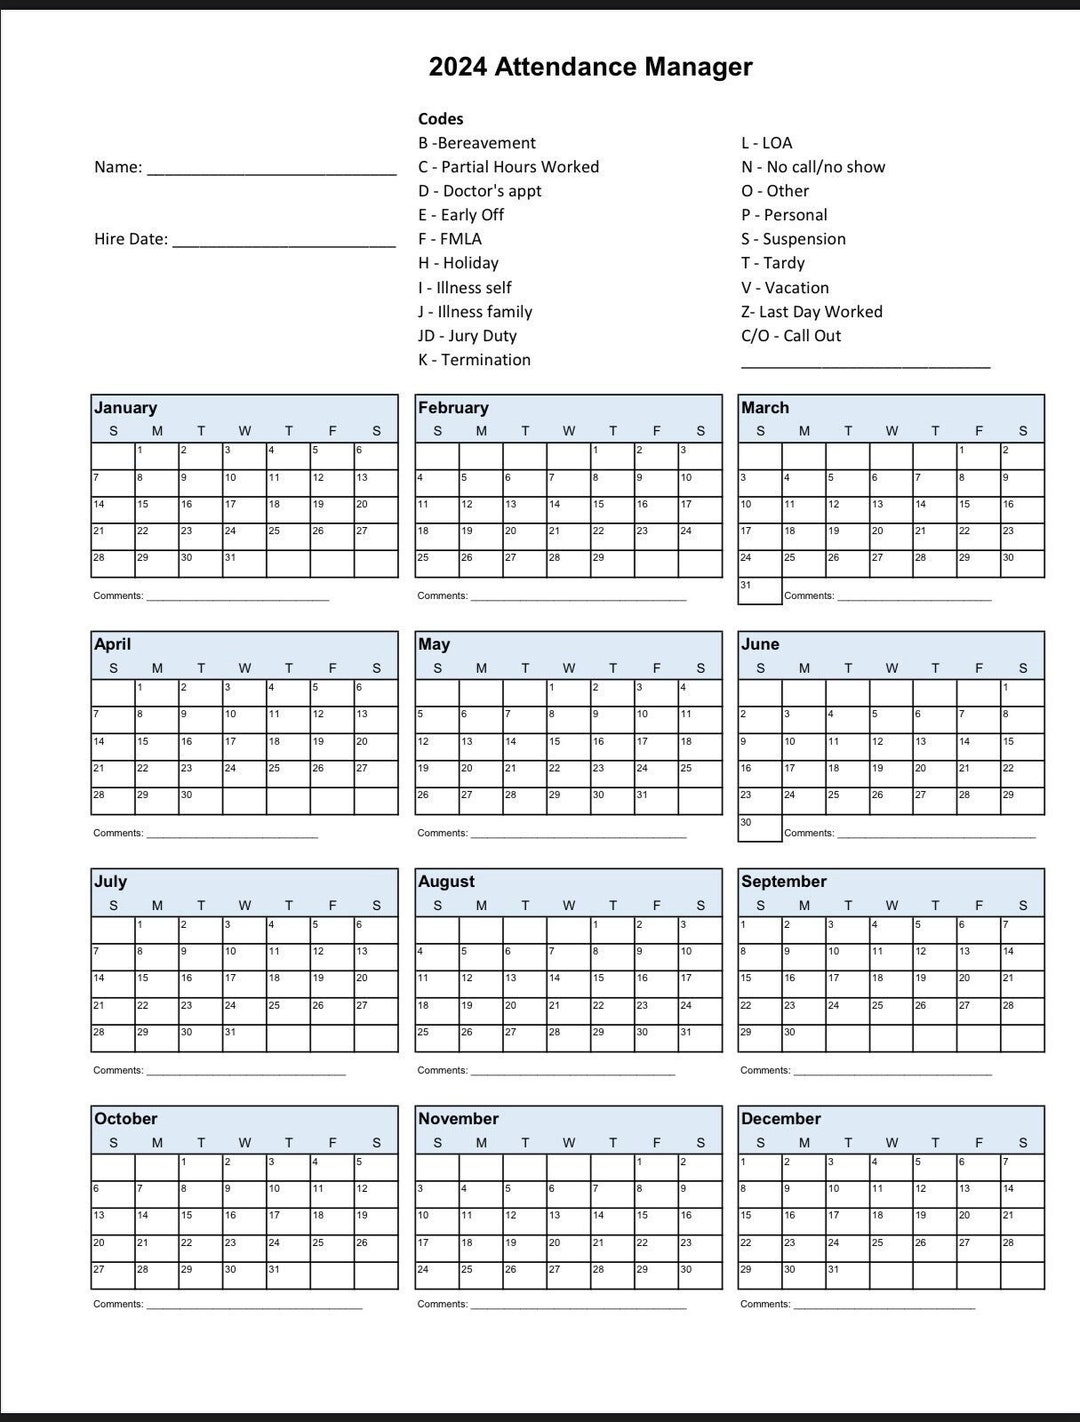 2024 Employee School Attendance Tracker Calendar, Employee within Employee Attendance Calendar 2024 Printable